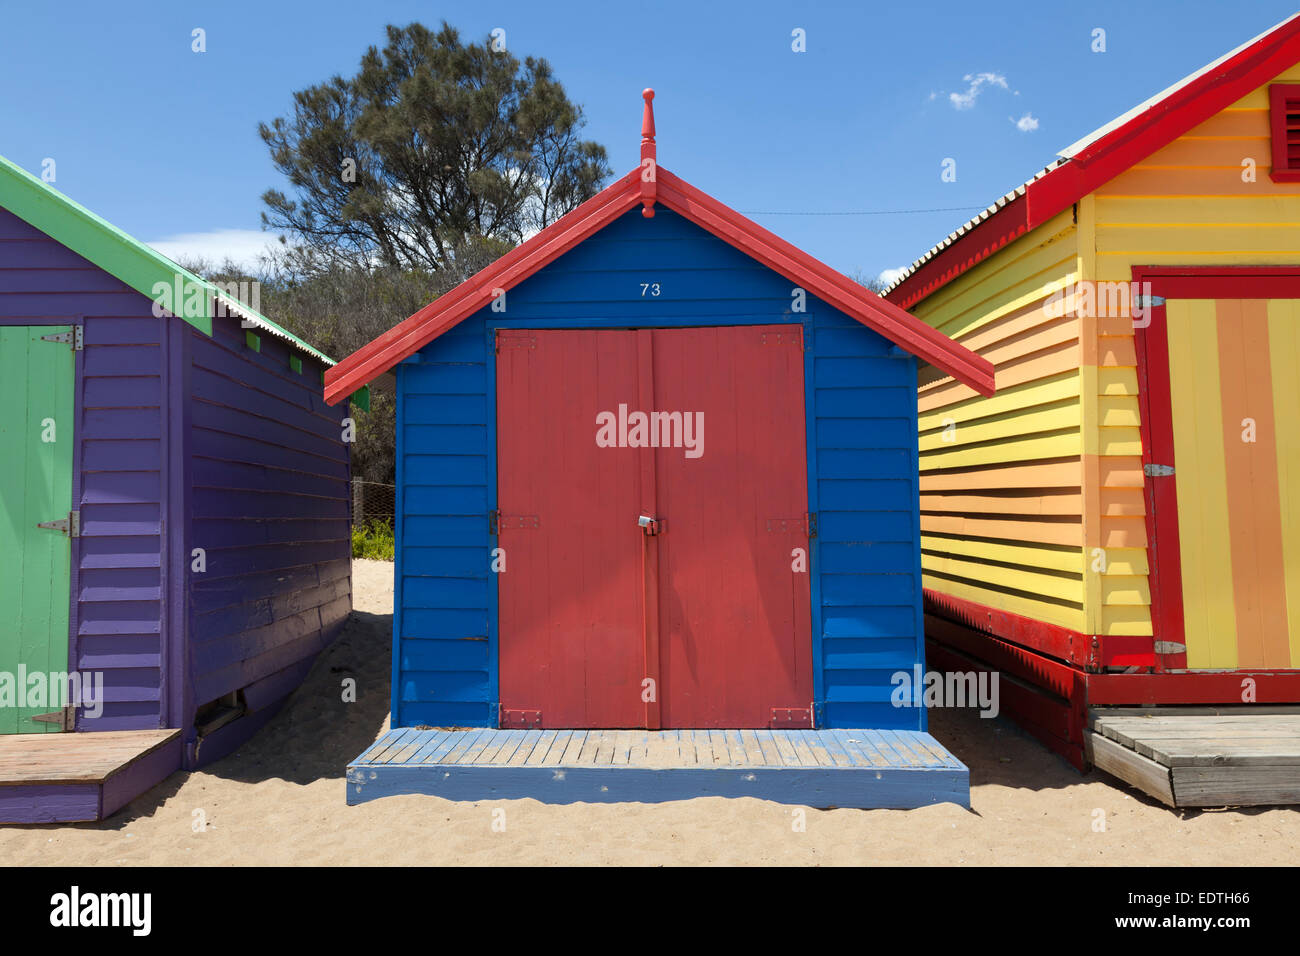 Cabines de plage peint la plage de Brighton, à Melbourne, Australie Banque D'Images